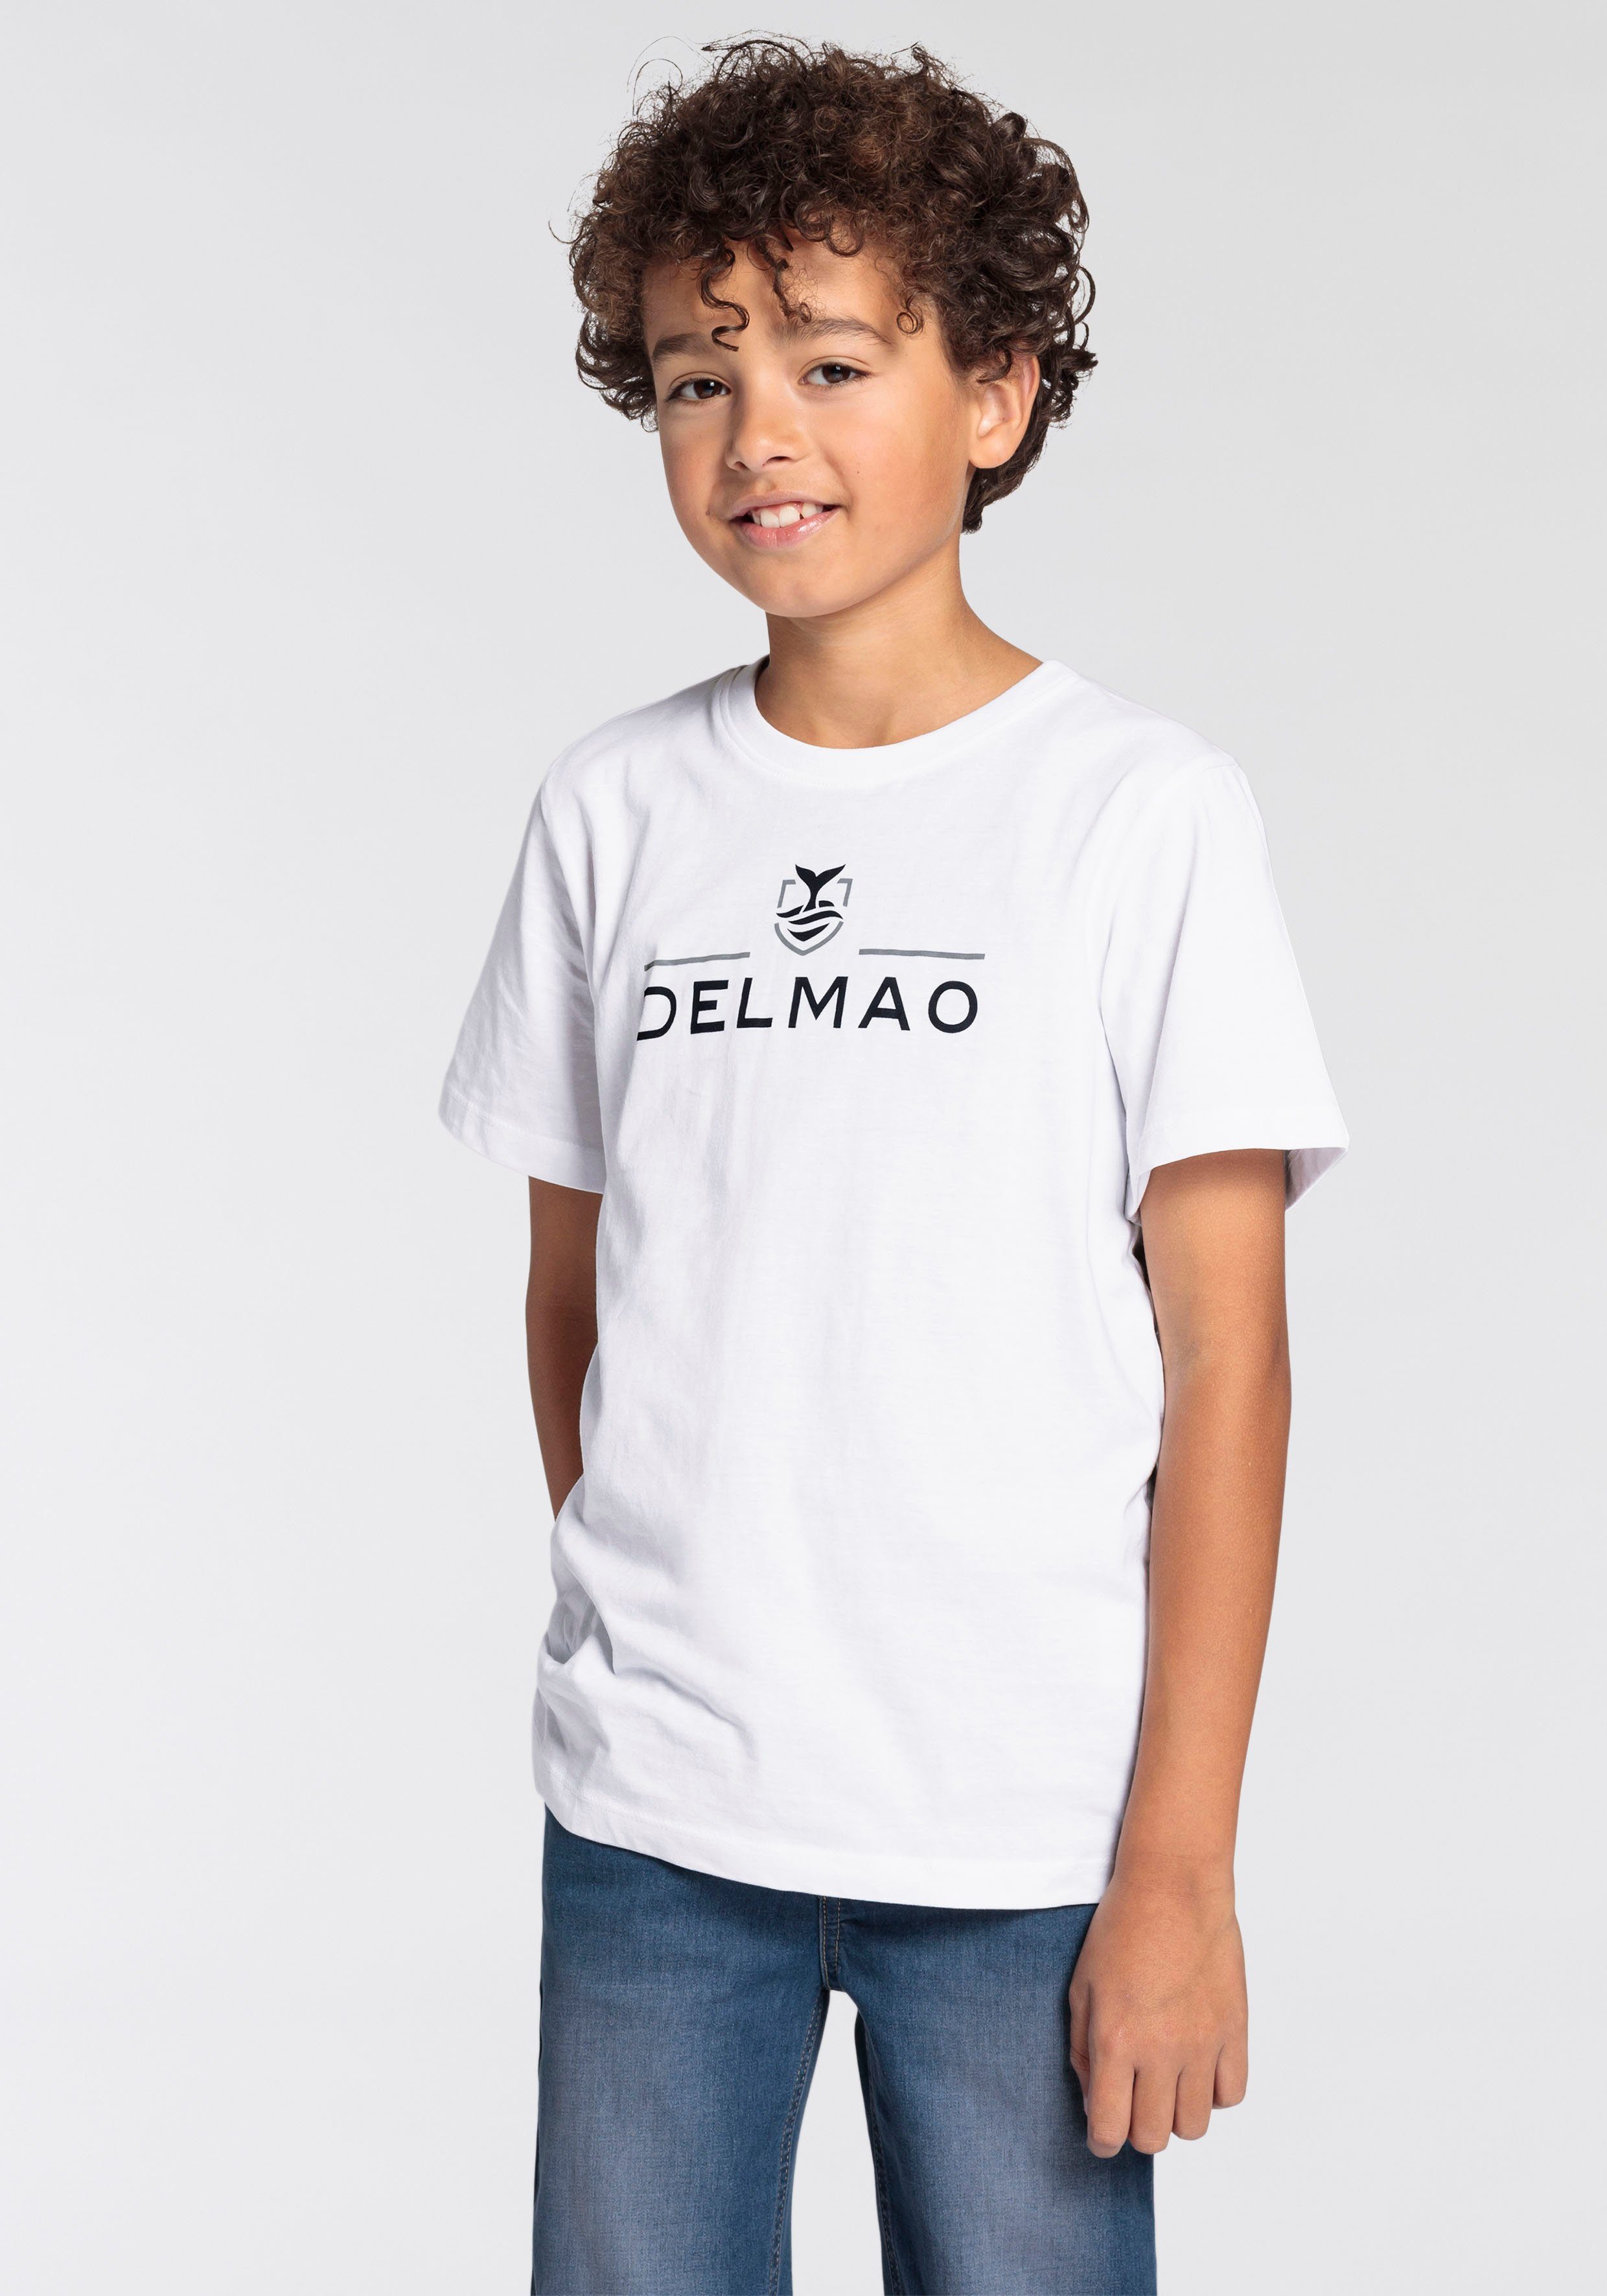 von T-Shirt DELMAO NEUE Delmao T-Shirt für Jungen Logo-Print. MARKE, Jungen, für mit